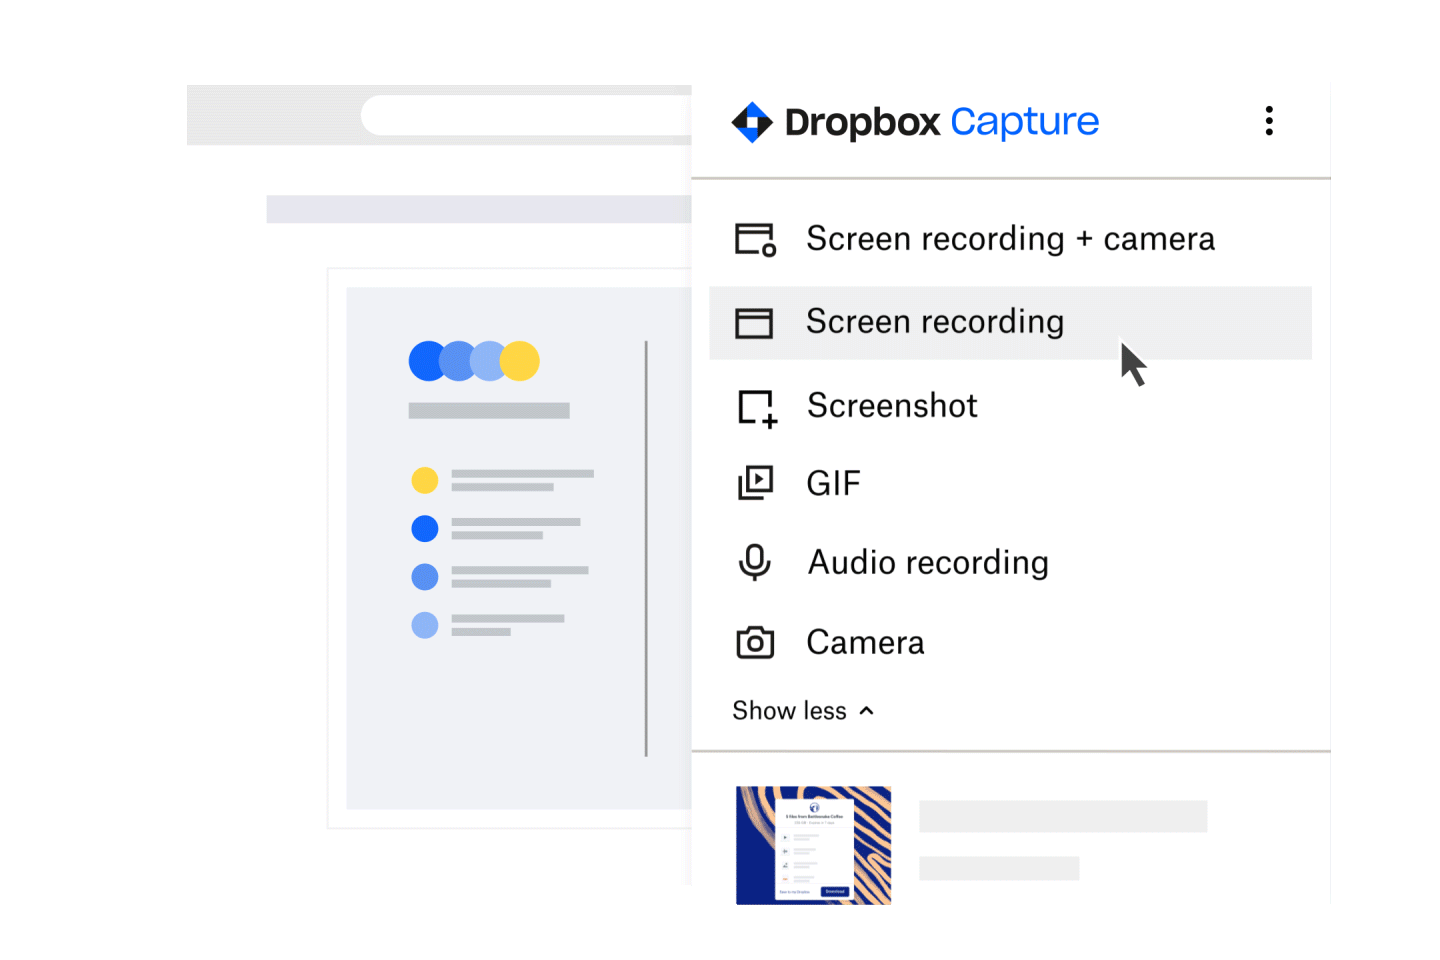 У Dropbox Capture жінка натискає кнопку записування екрана й камери, обирає розділ екрана, натискає кнопку записування та починає запис. 